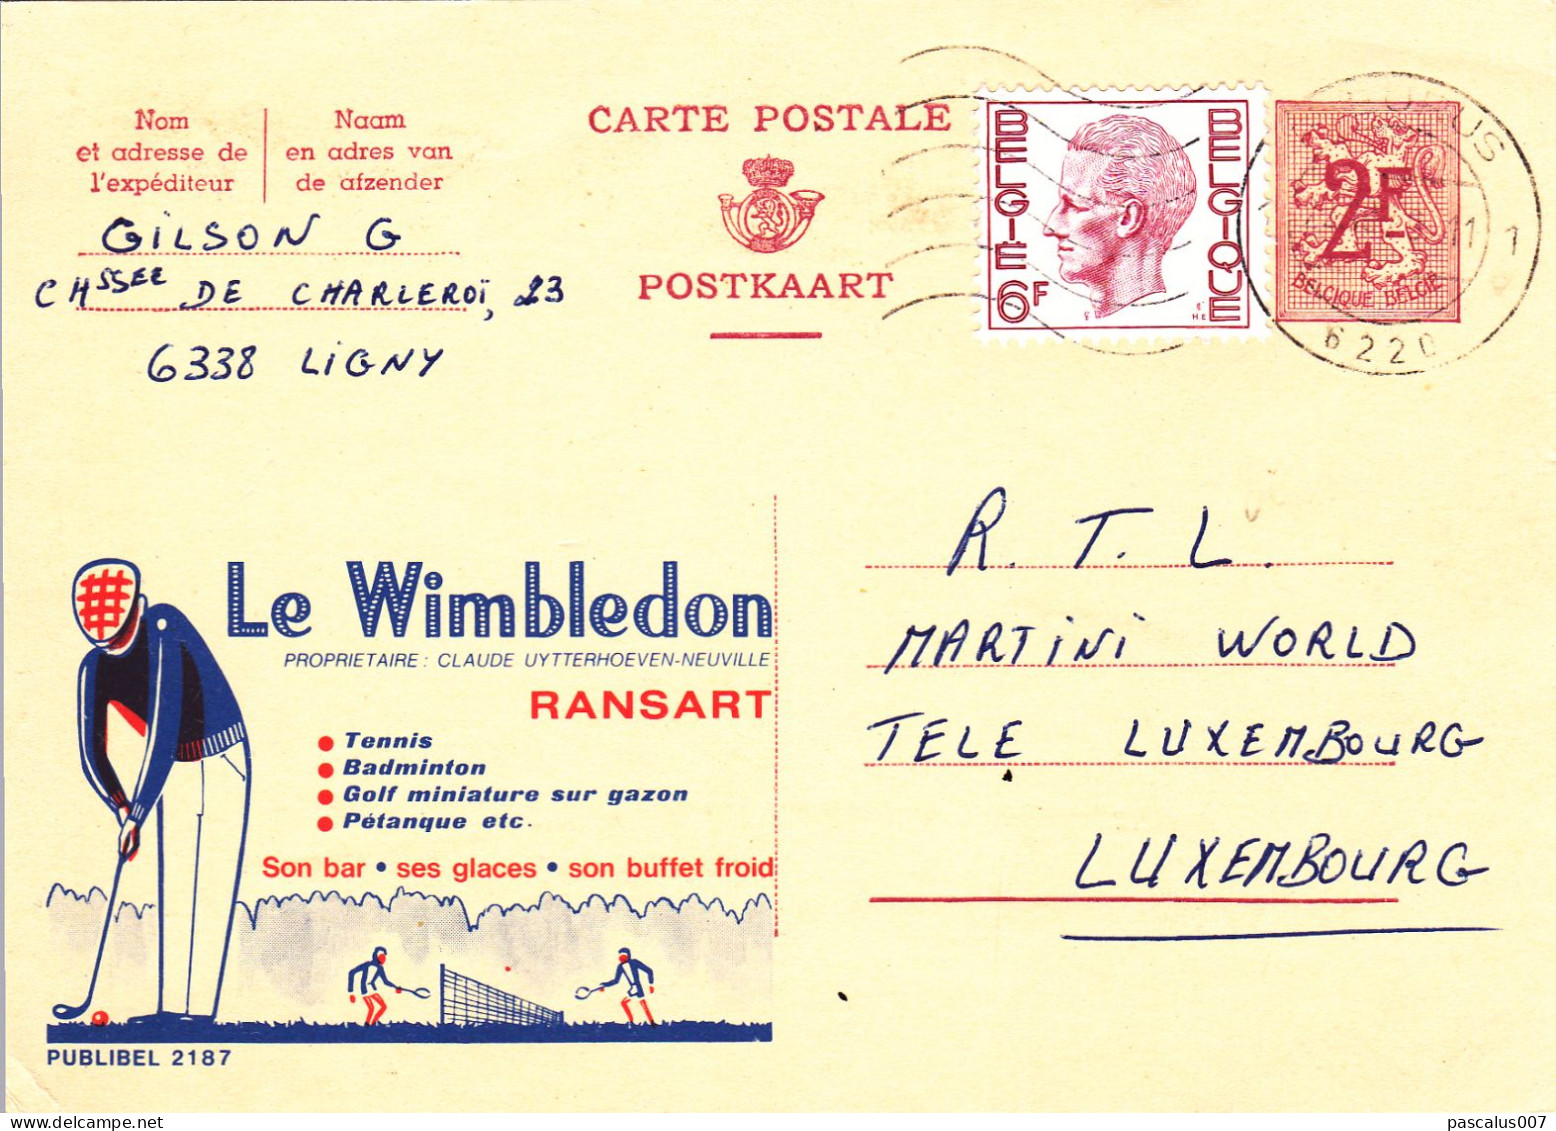 B01-423 22187 - Entier Postal - Carte Publibel N° 2187 - Le Wimbledon Ransart - Tennis Golf FN - Publibels